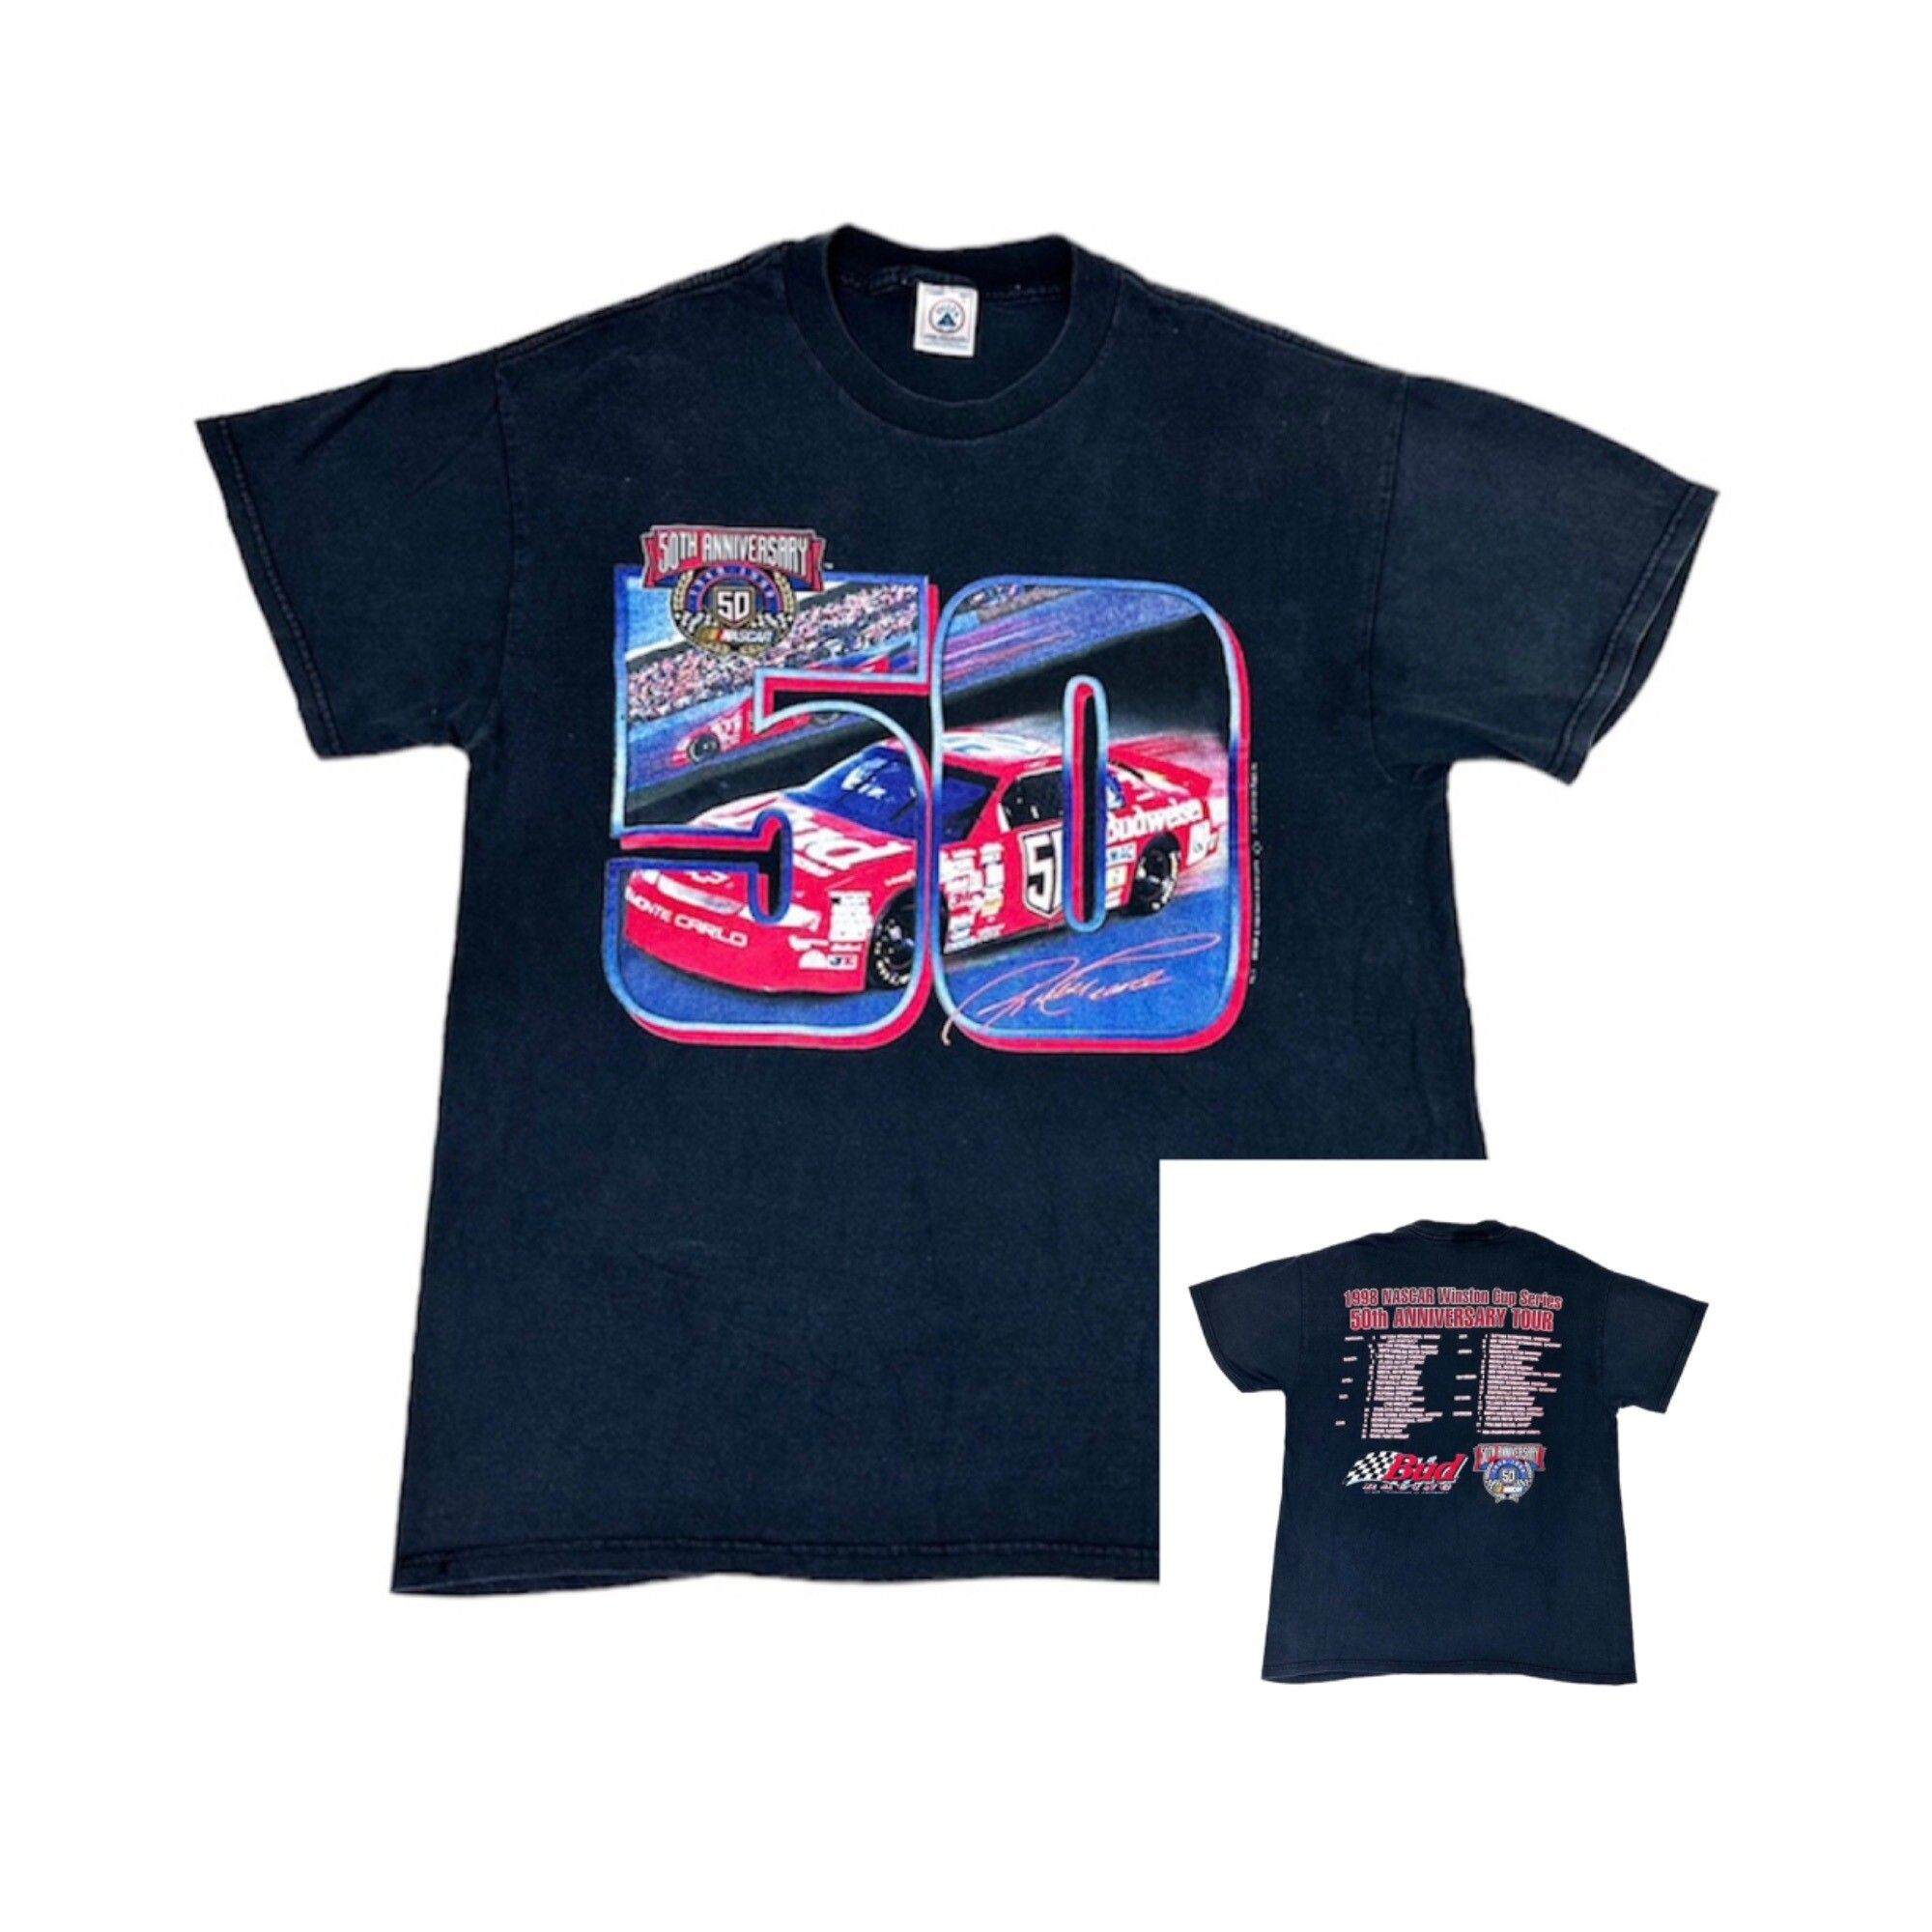 Vintage Vintage 1998 NASCAR Winston Cup T-Shirt Black Large 50th Size US L / EU 52-54 / 3 - 1 Preview